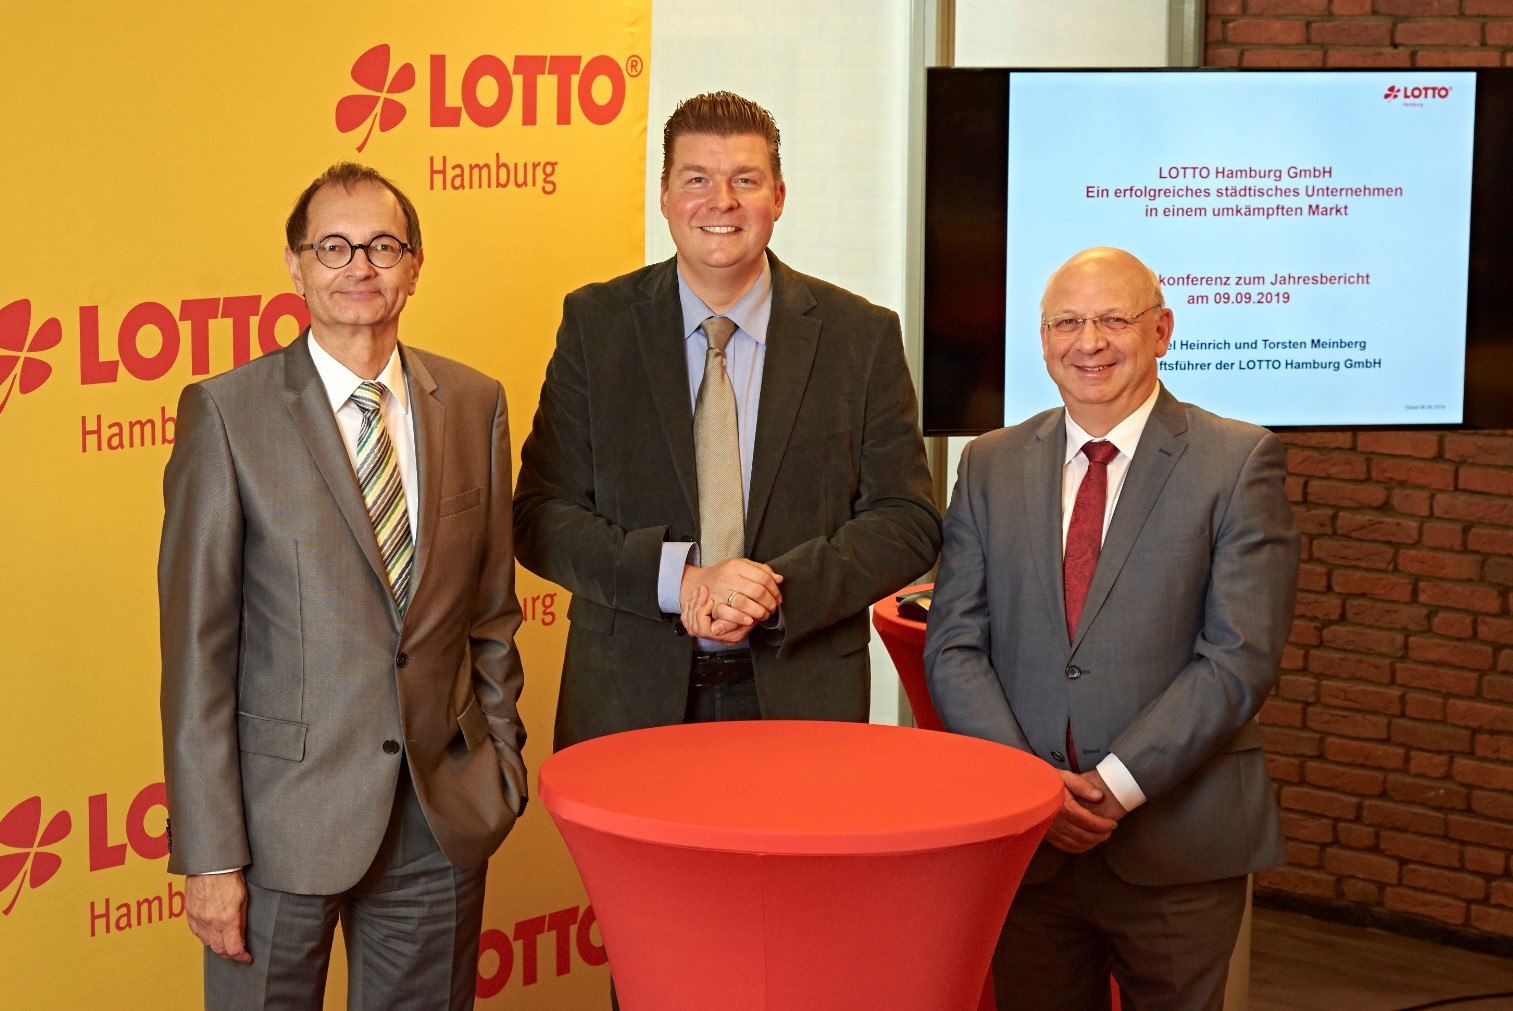 Lotto Hamburg Geschäftsführer Heinrich (l.) und Meinberg (r.) mit Finanzsenator Dressel (m.)